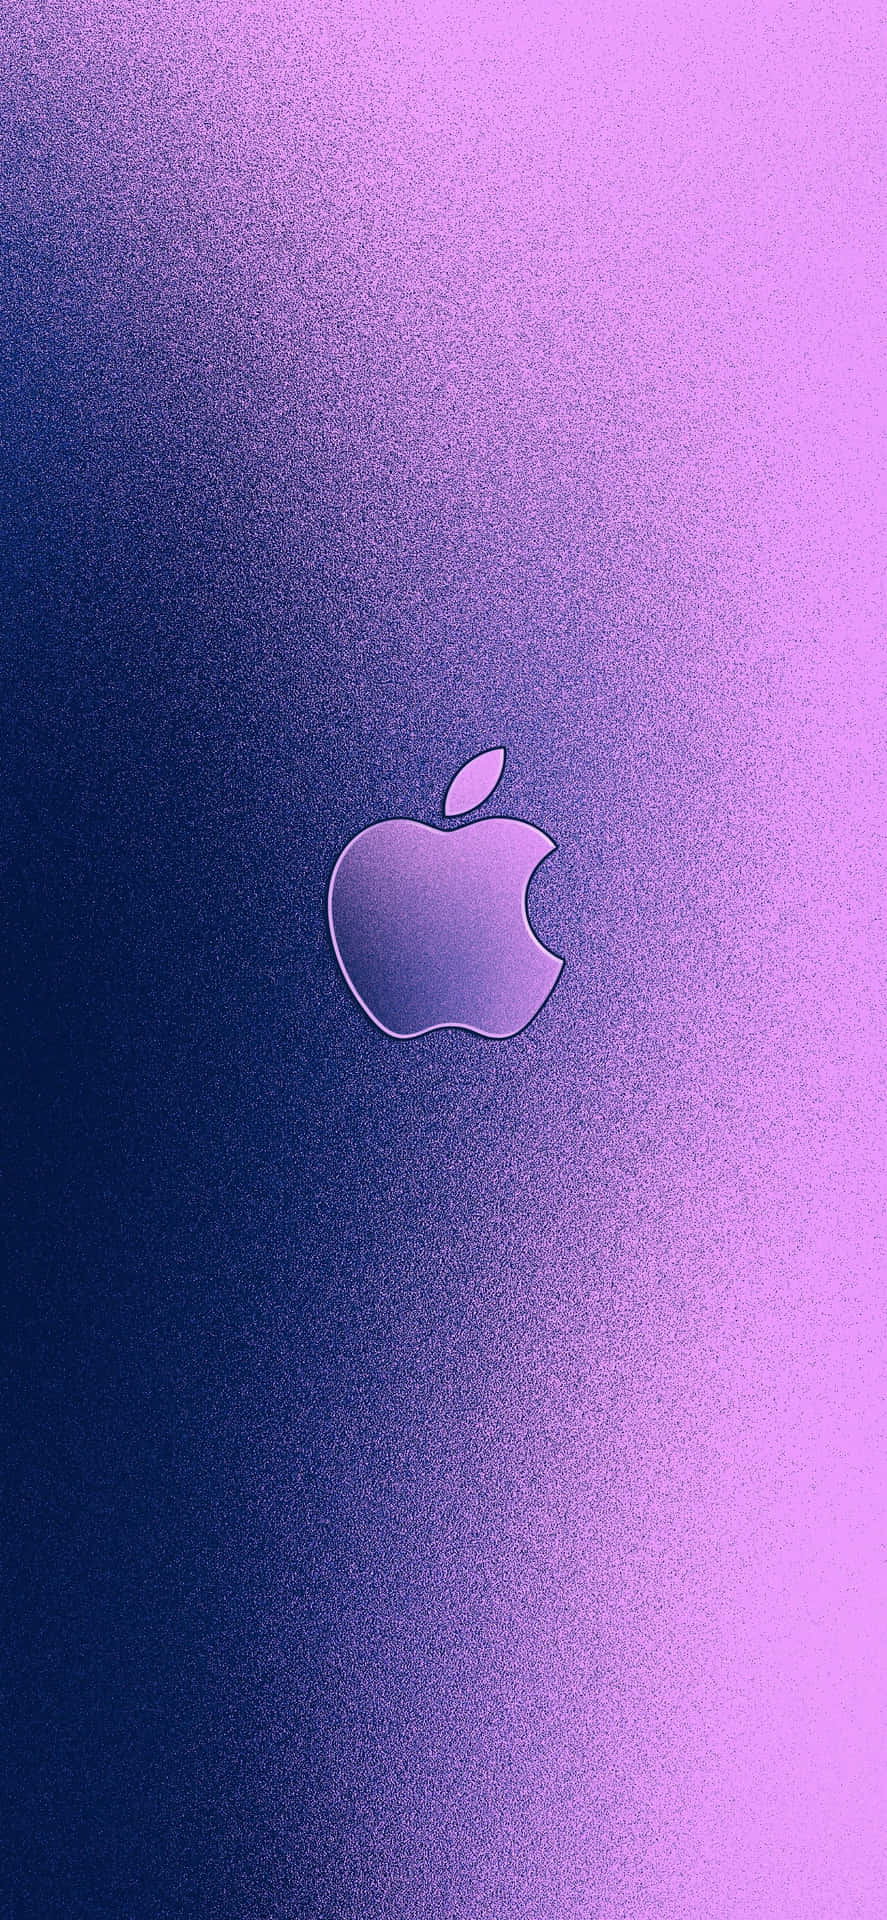 Undetallado Vistazo Al Logotipo De Apple En Un Iphone X Fondo de pantalla